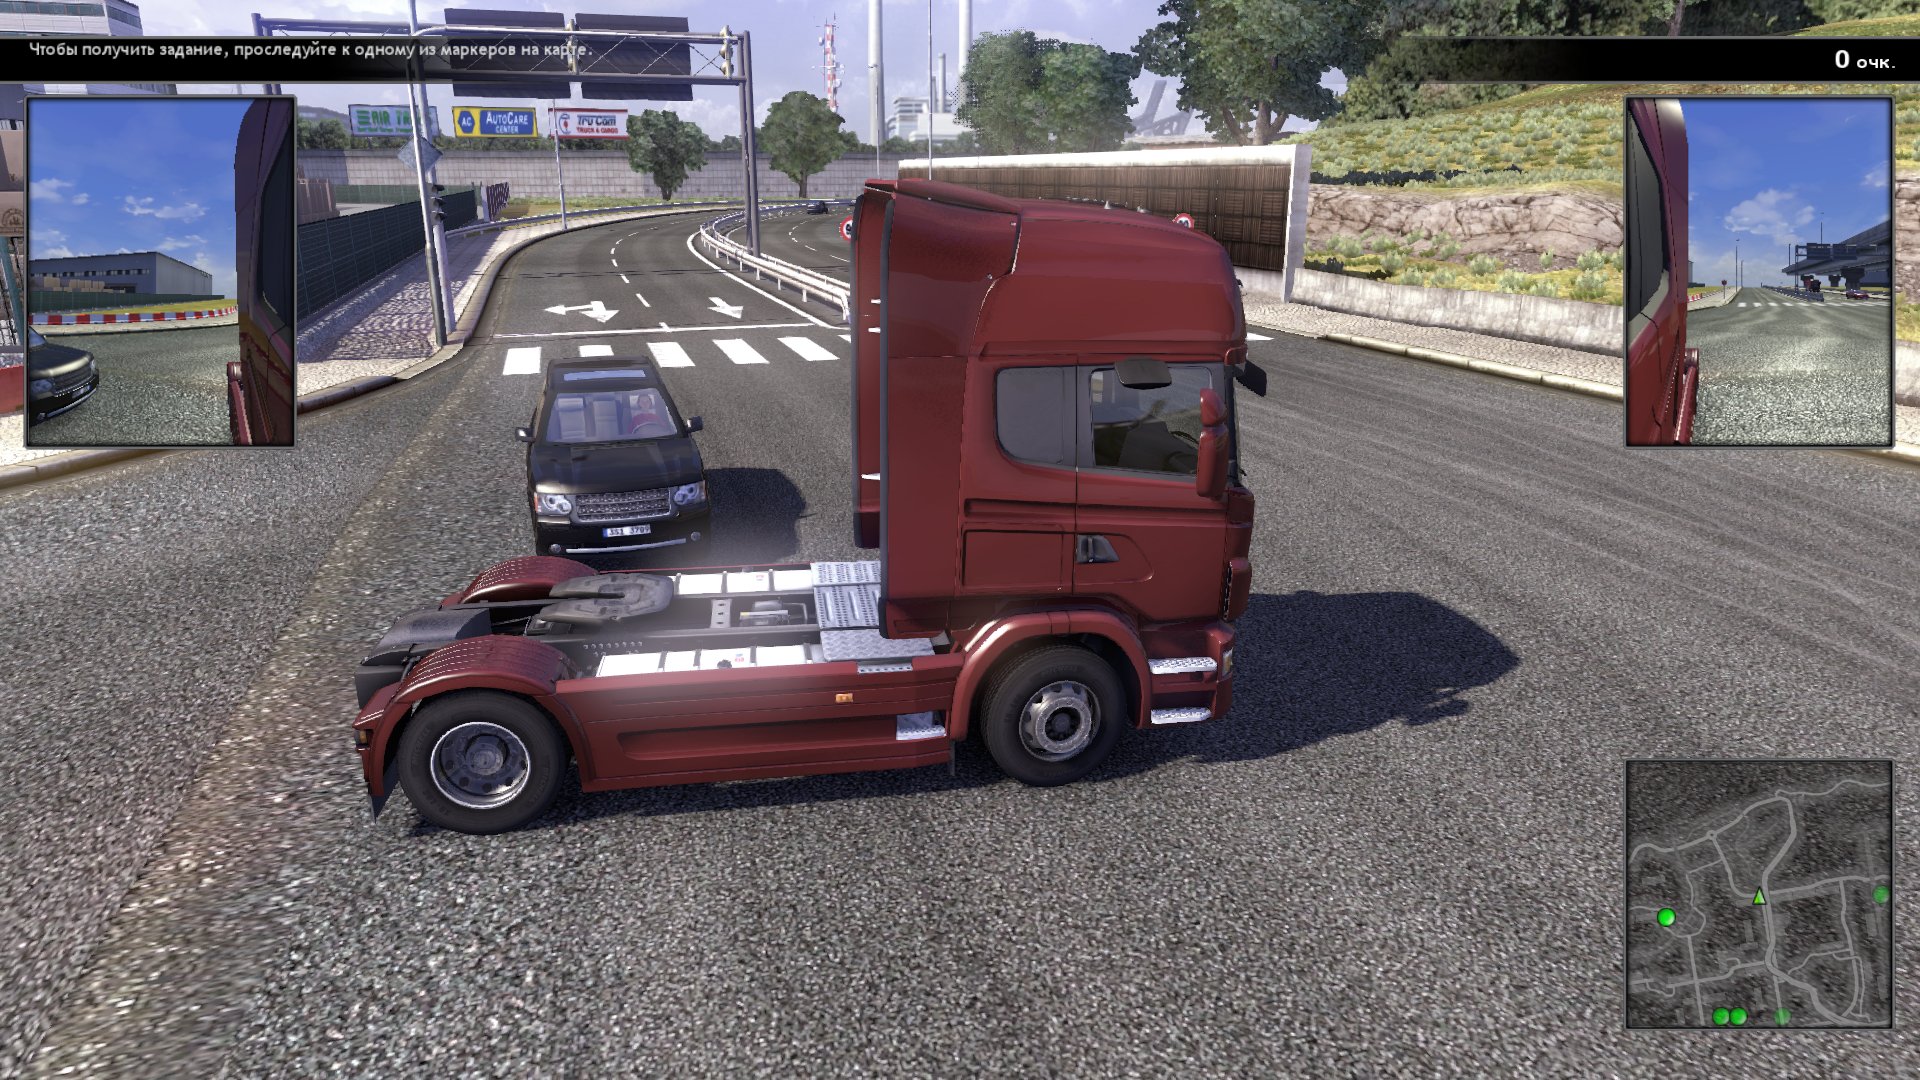 Грузовик нужен грузовик игра игра. Игра Scania Truck Driving Simulator. Скания трак драйв симулятор. Scania Truck Driving Simulator 2. Scania.Truck Driving Simulator.v 1.5.0.